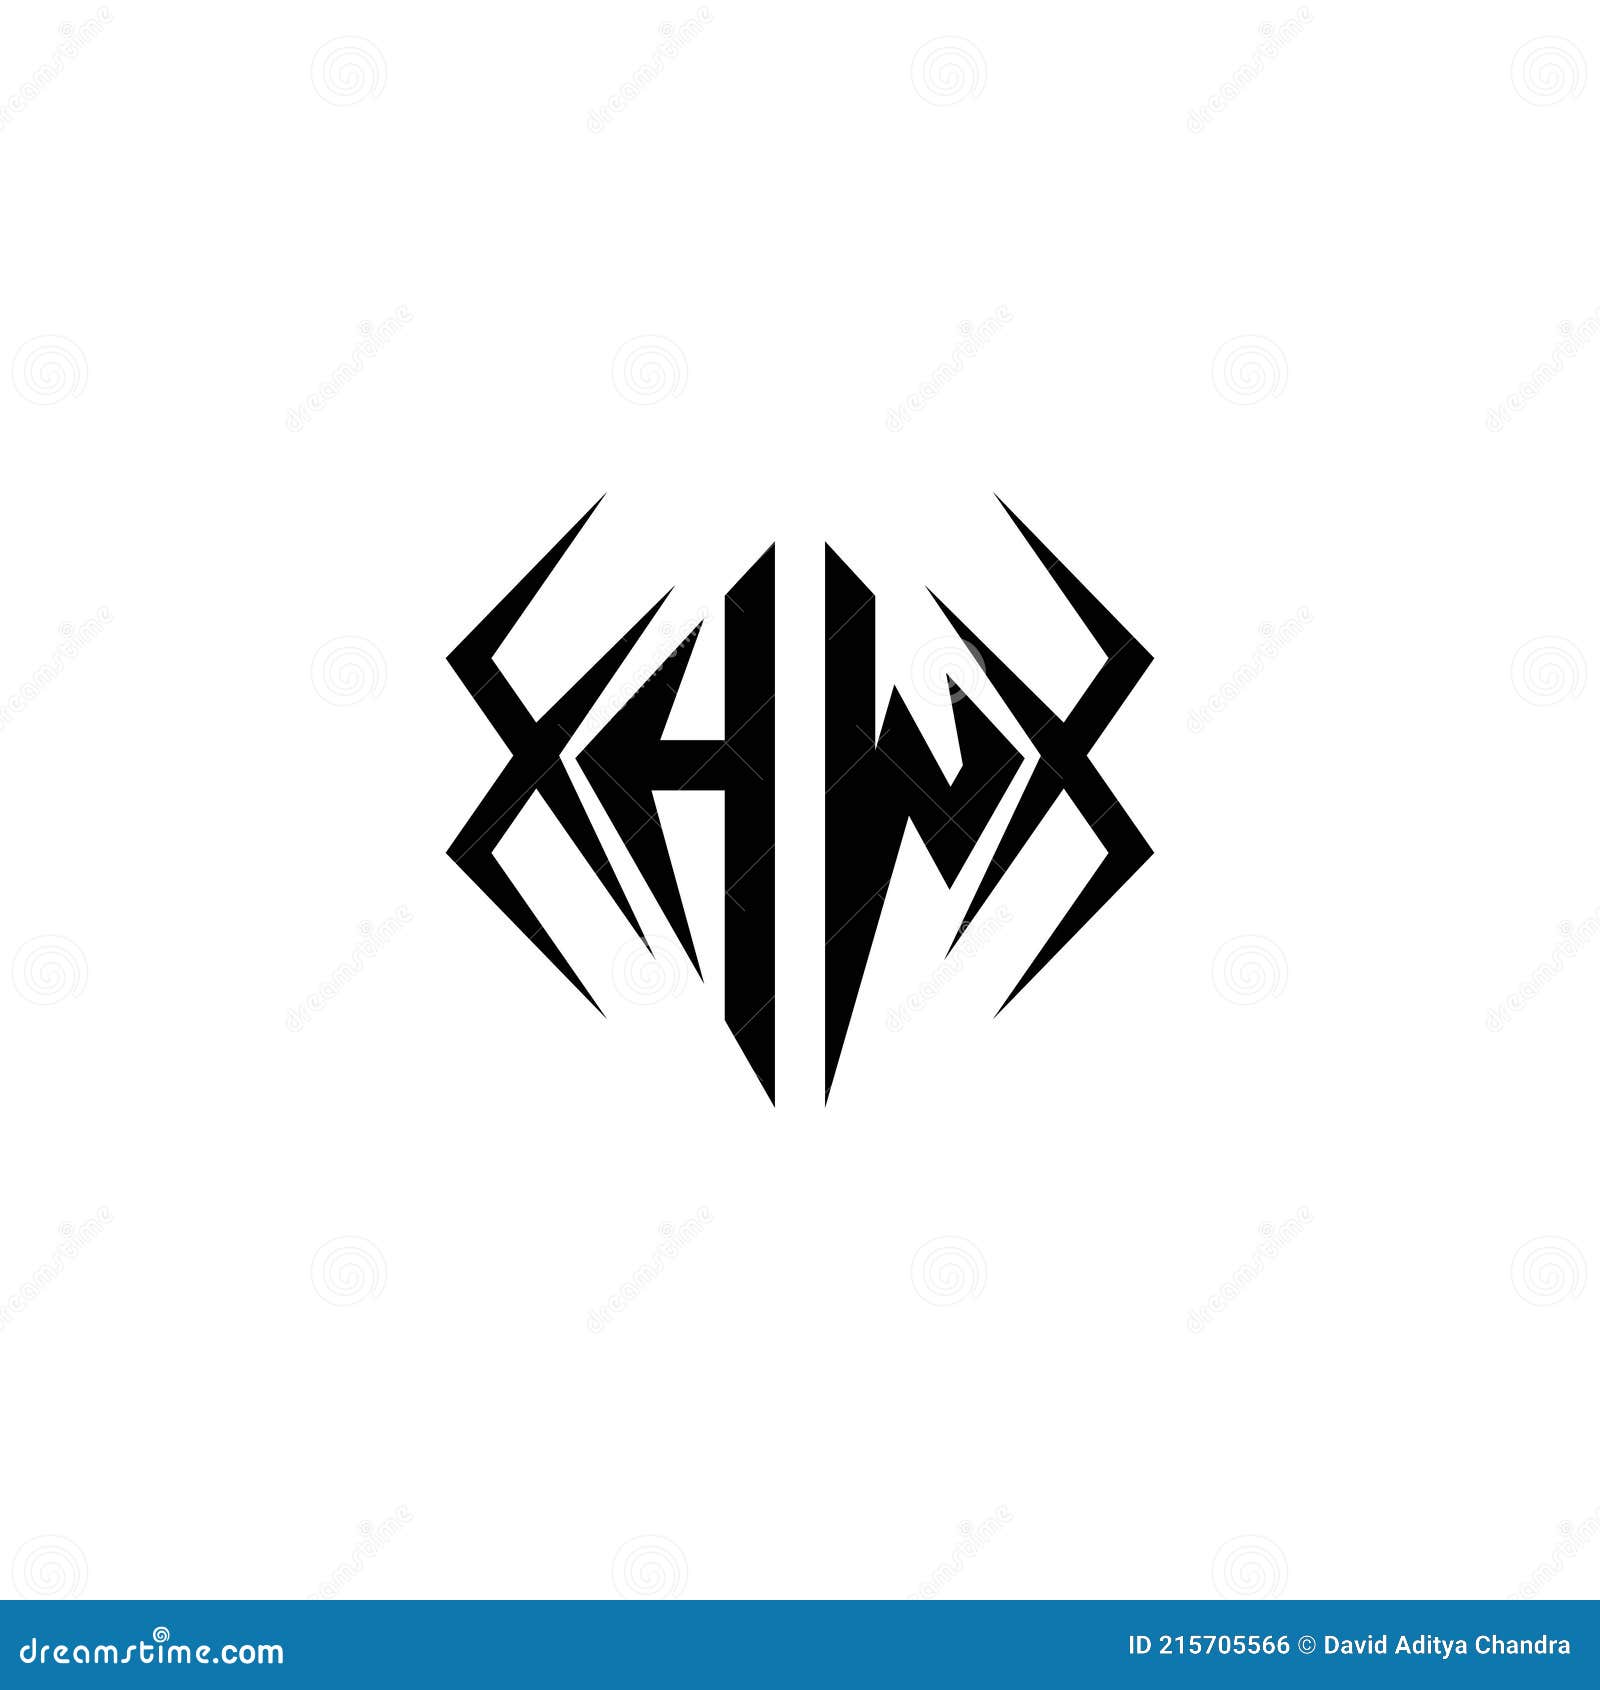 Letter hw logo design Royalty Free Vector Image